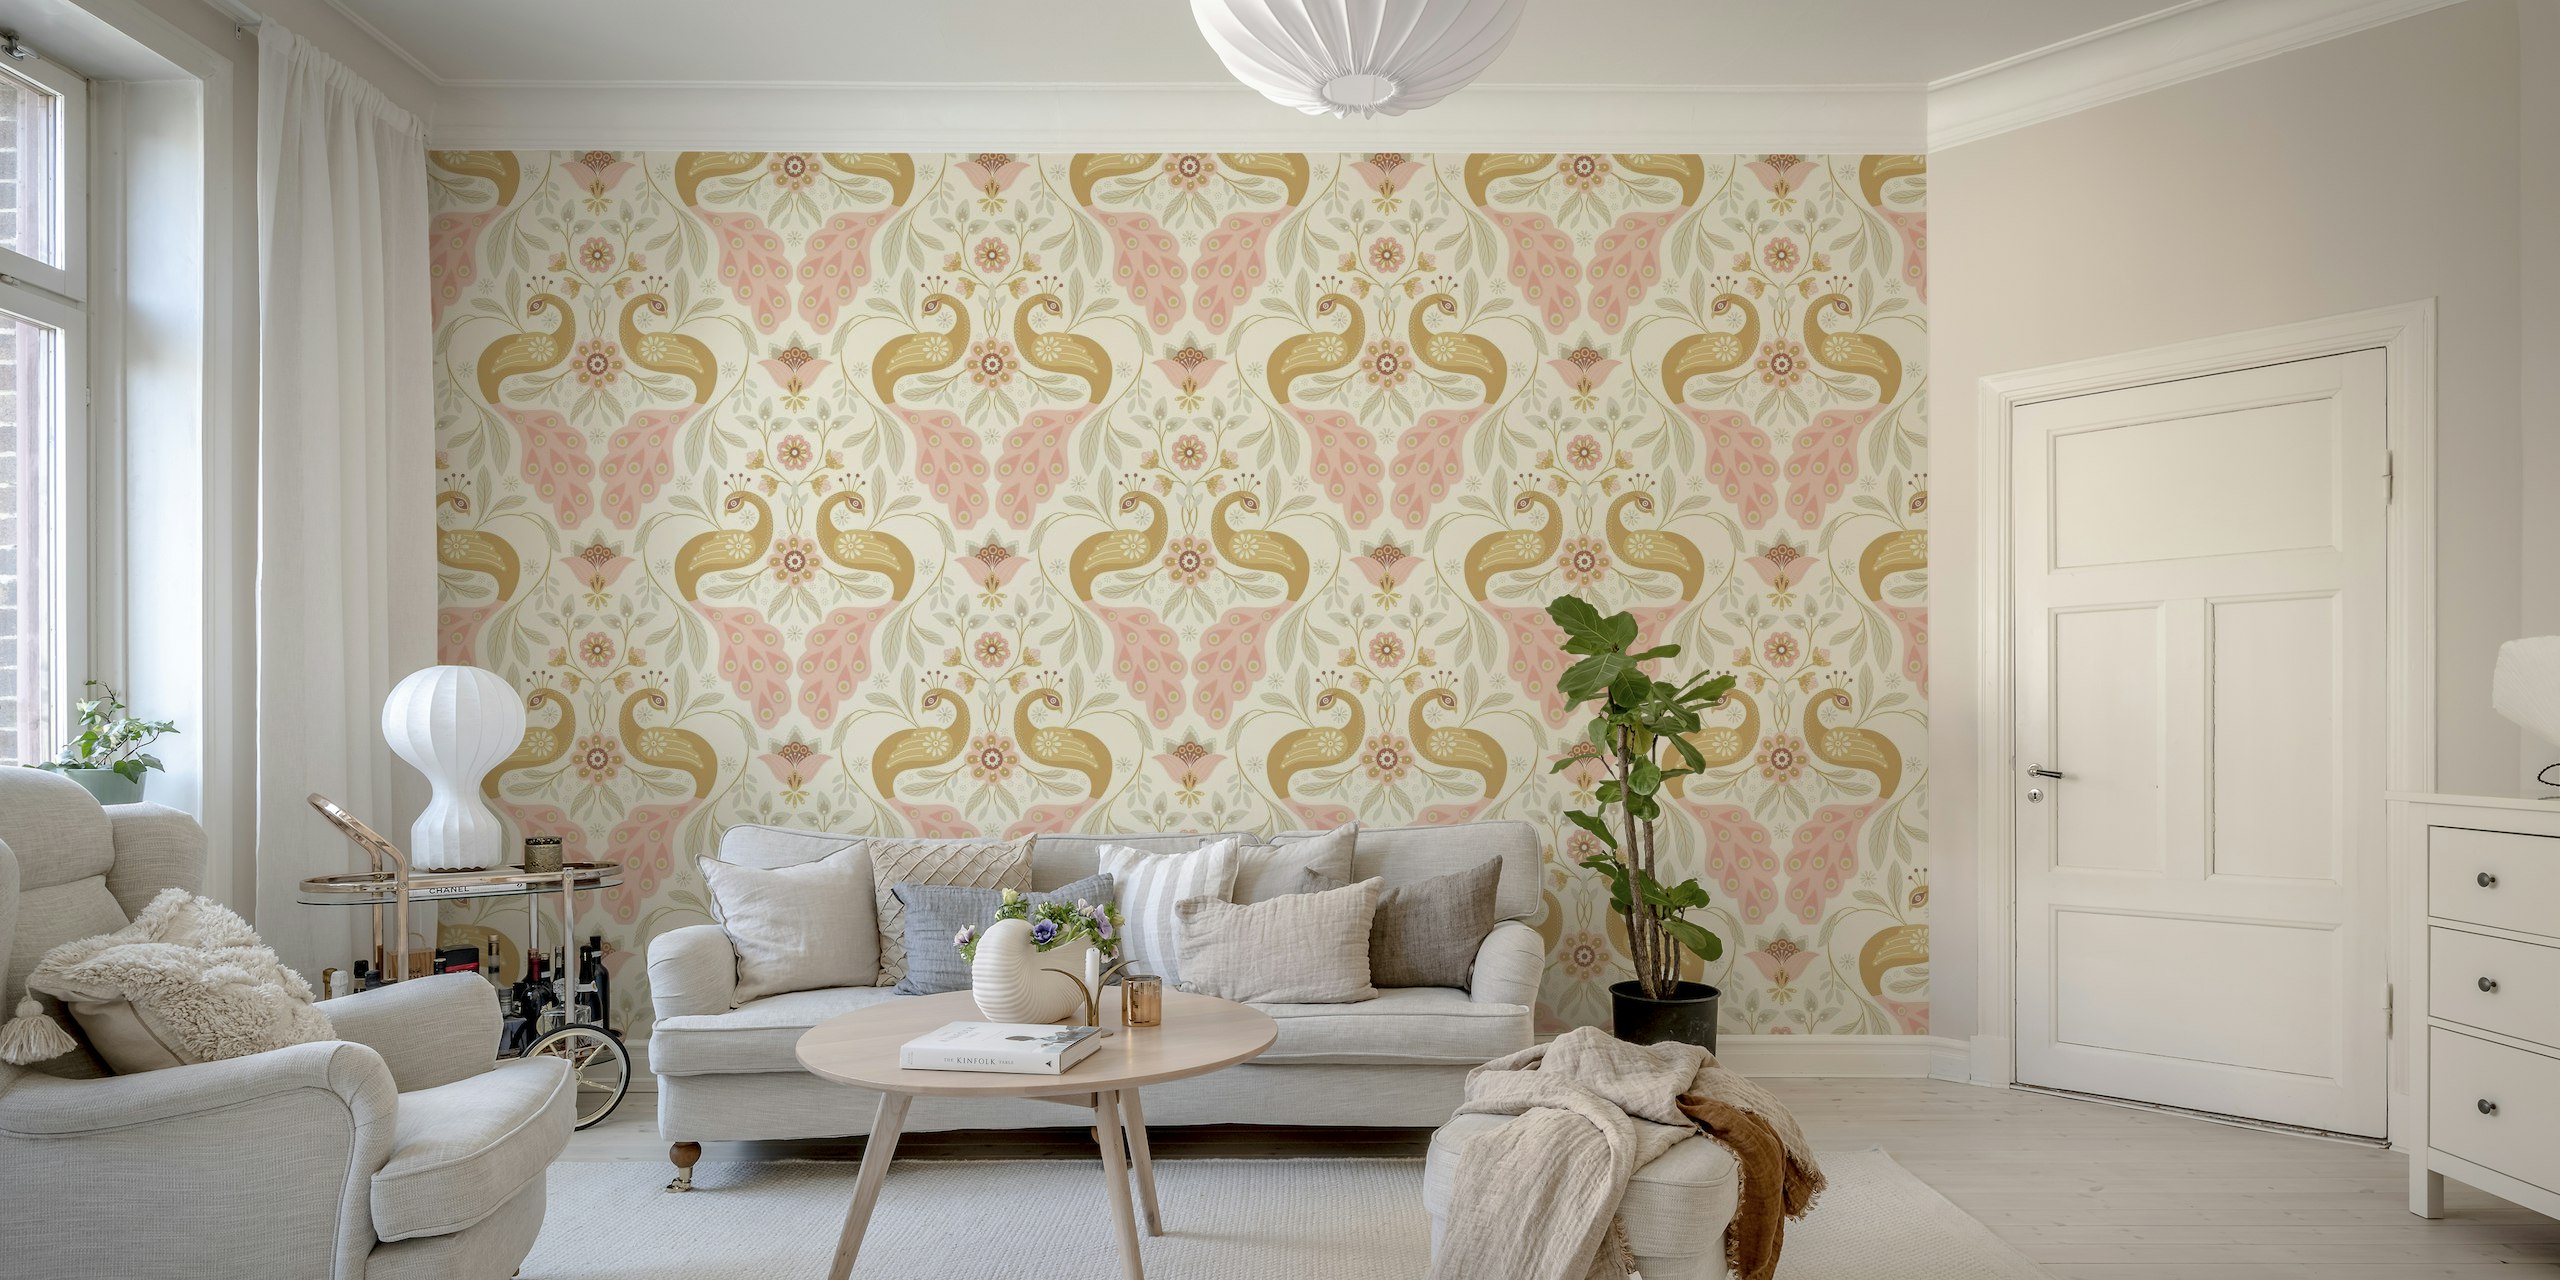 Papier peint paon pastel avec un design élégant pour la décoration intérieure.